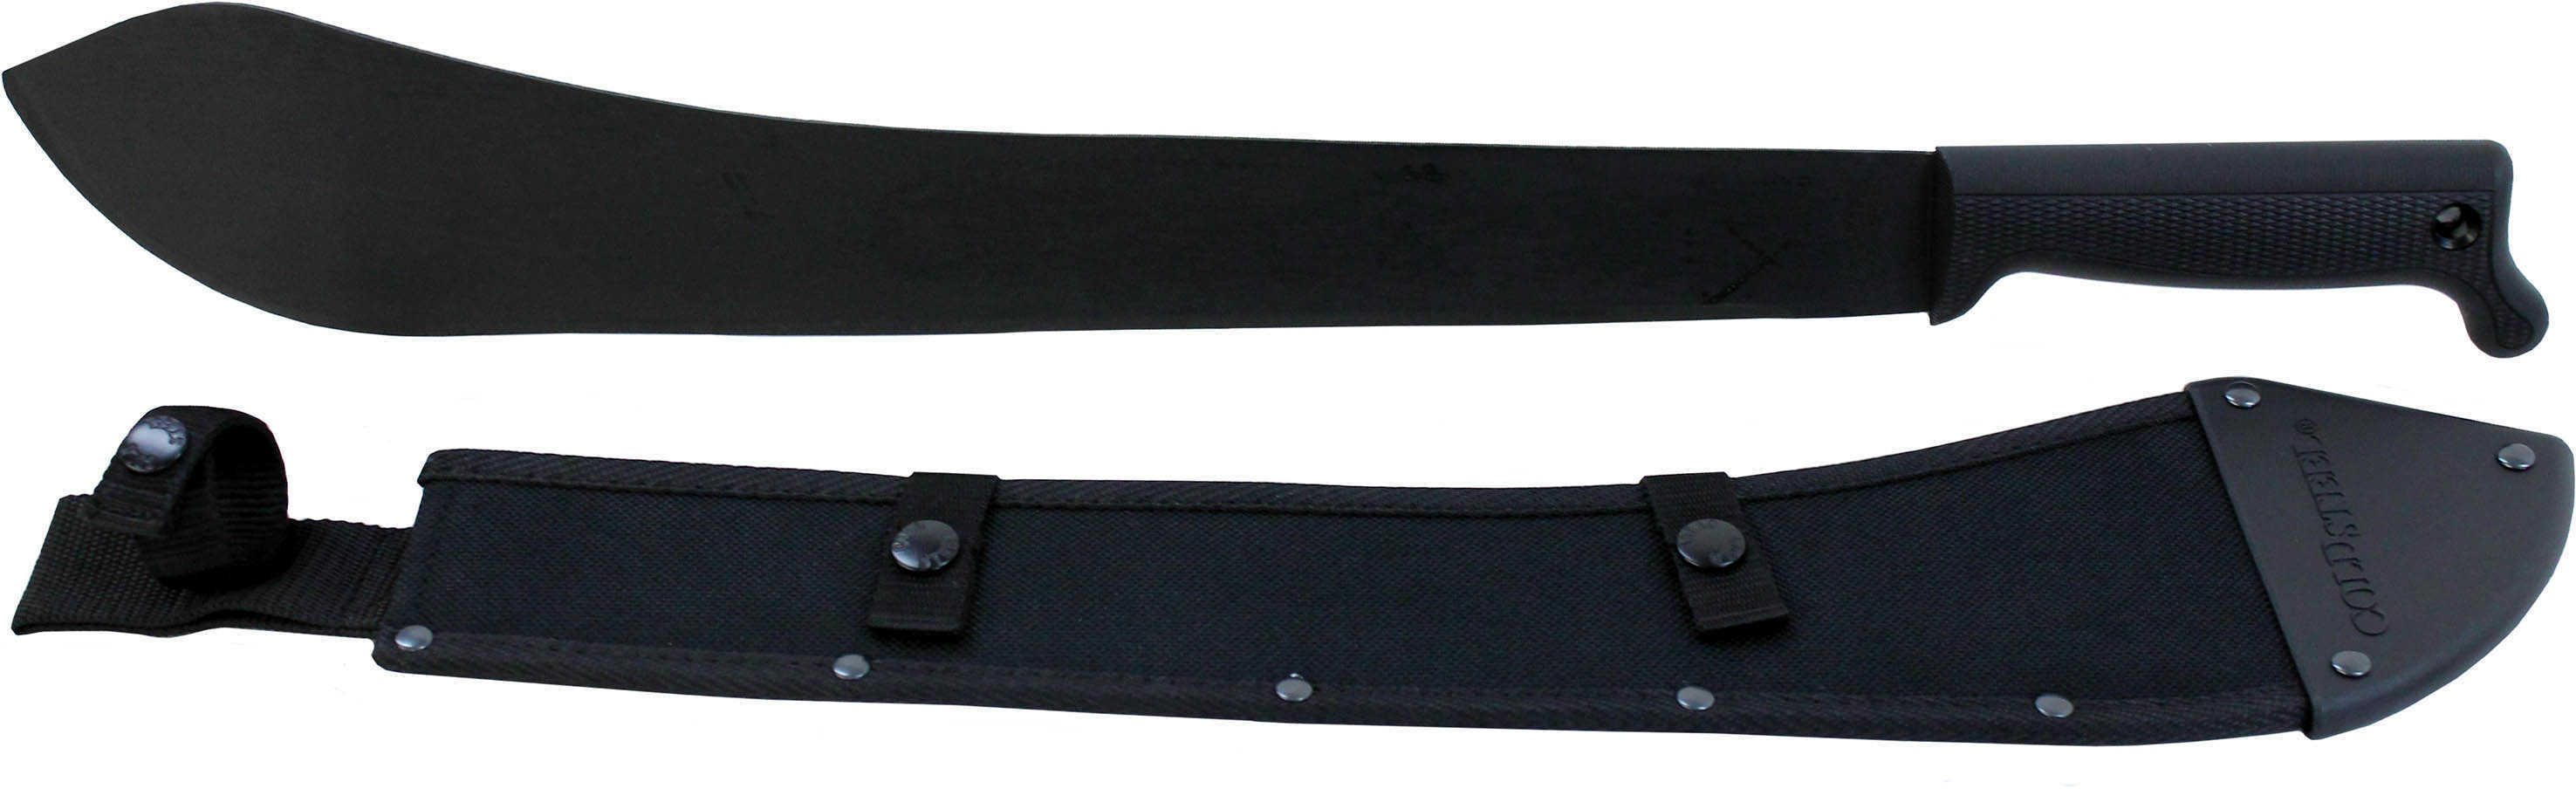 Cold Steel Bolo Machete Fixed Blade - 18" Black